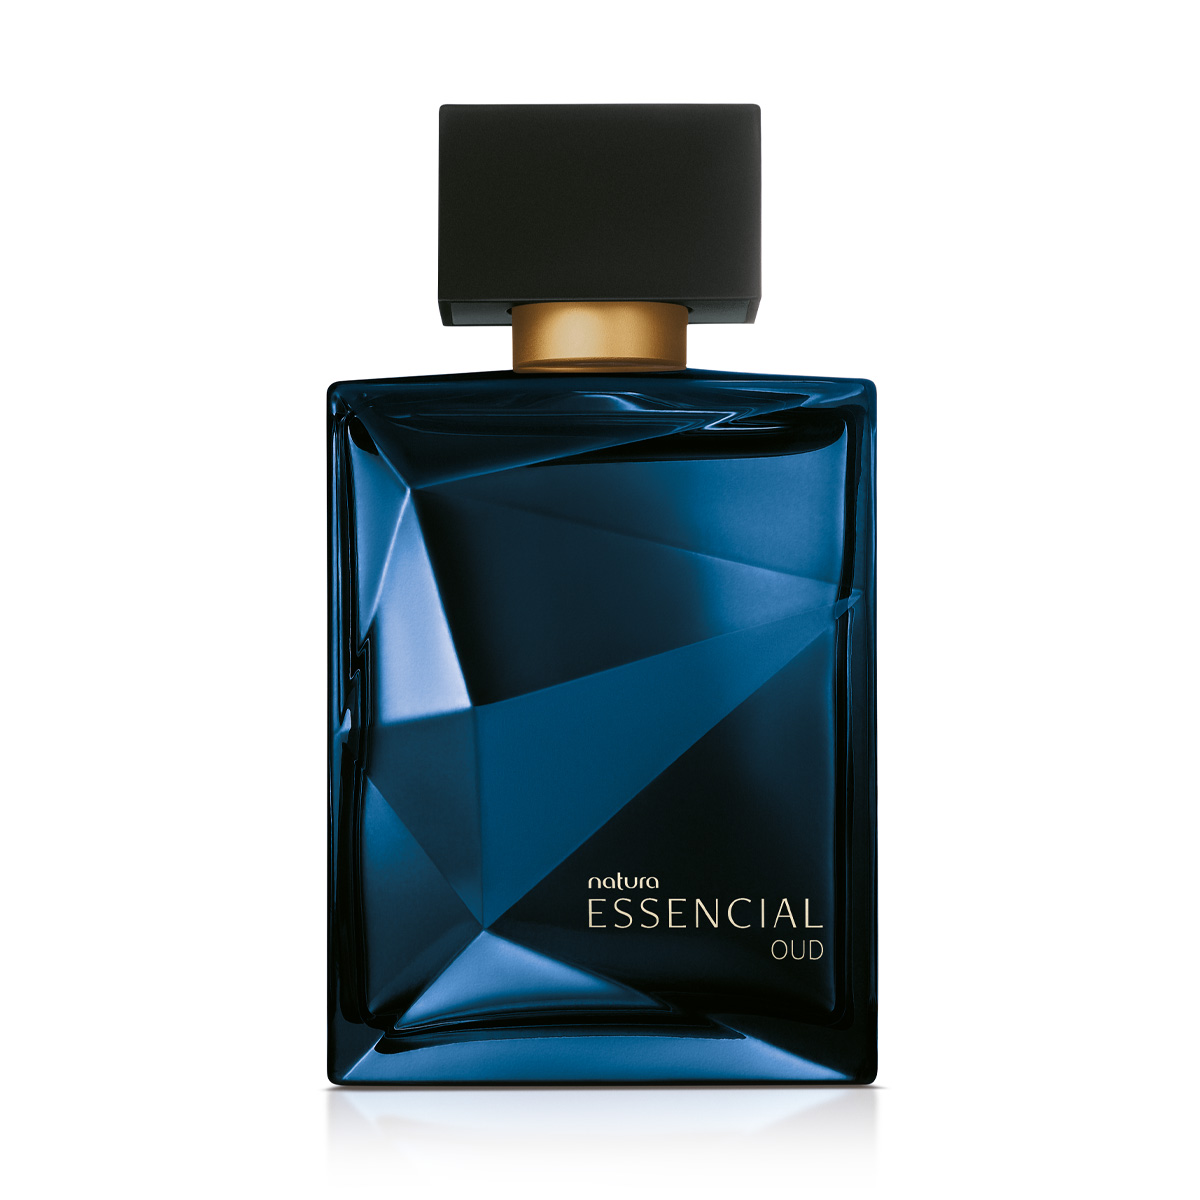 Perfume masculino natura essencial oud está entre os Perfumes Amadeirados que GRUDAM na pele